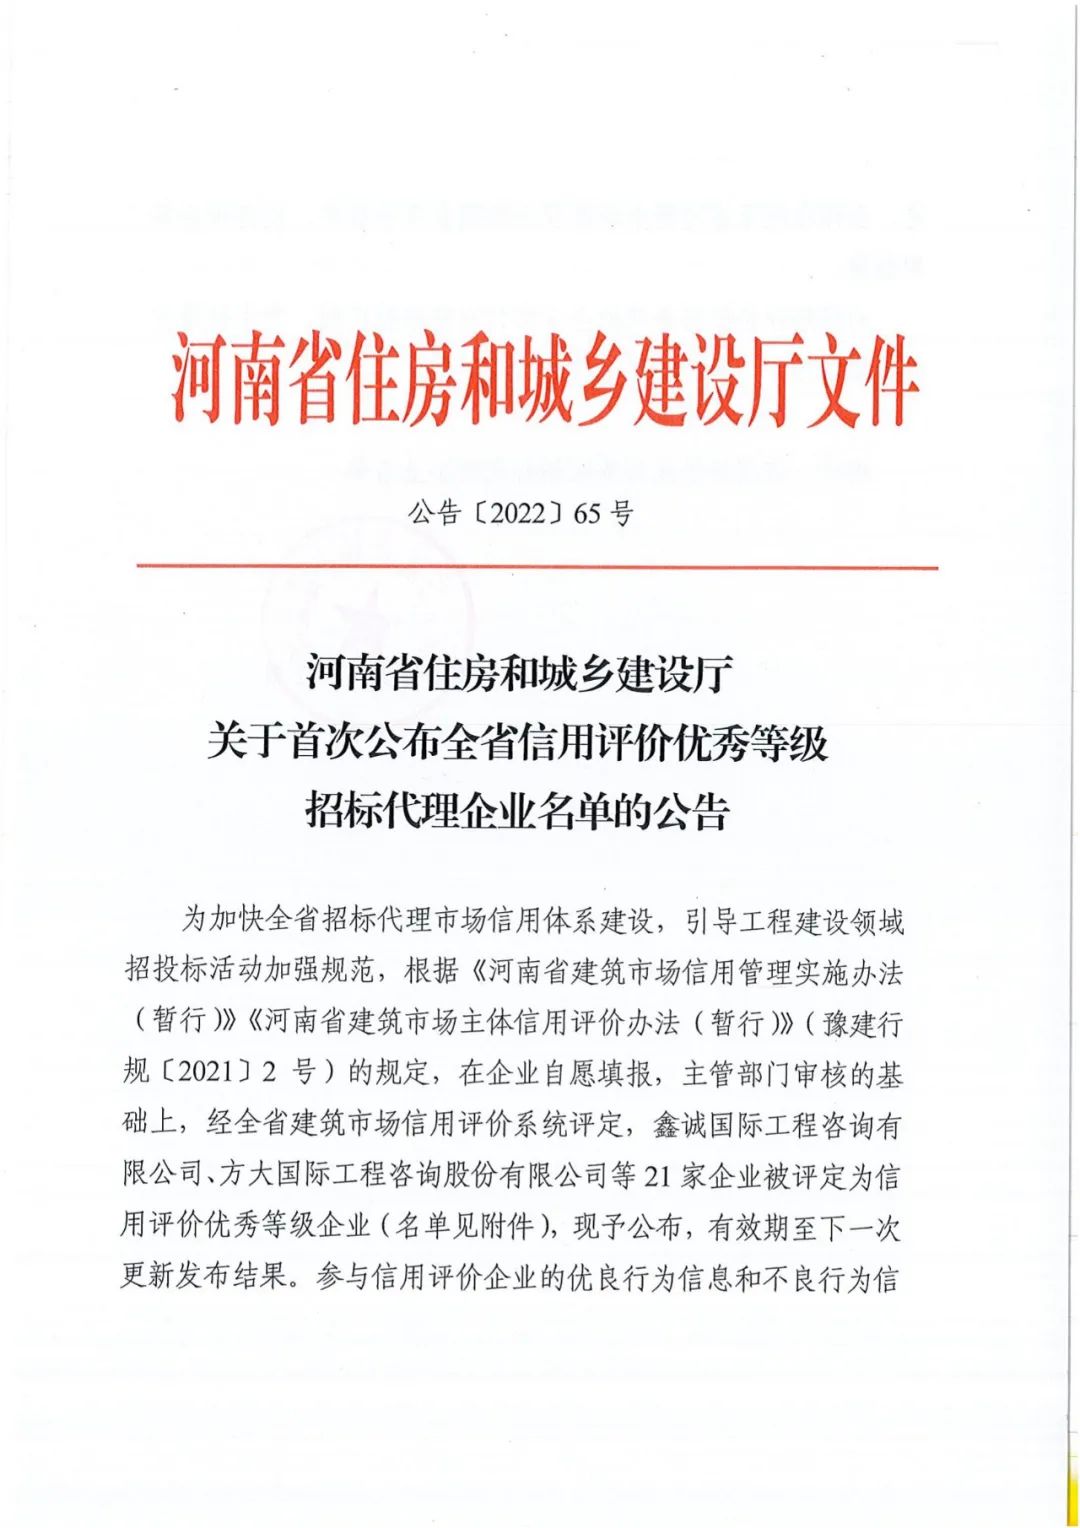 热烈祝贺我公司获得河南省住建厅评定“全省信用评价优秀等级招标代理“企业称号。